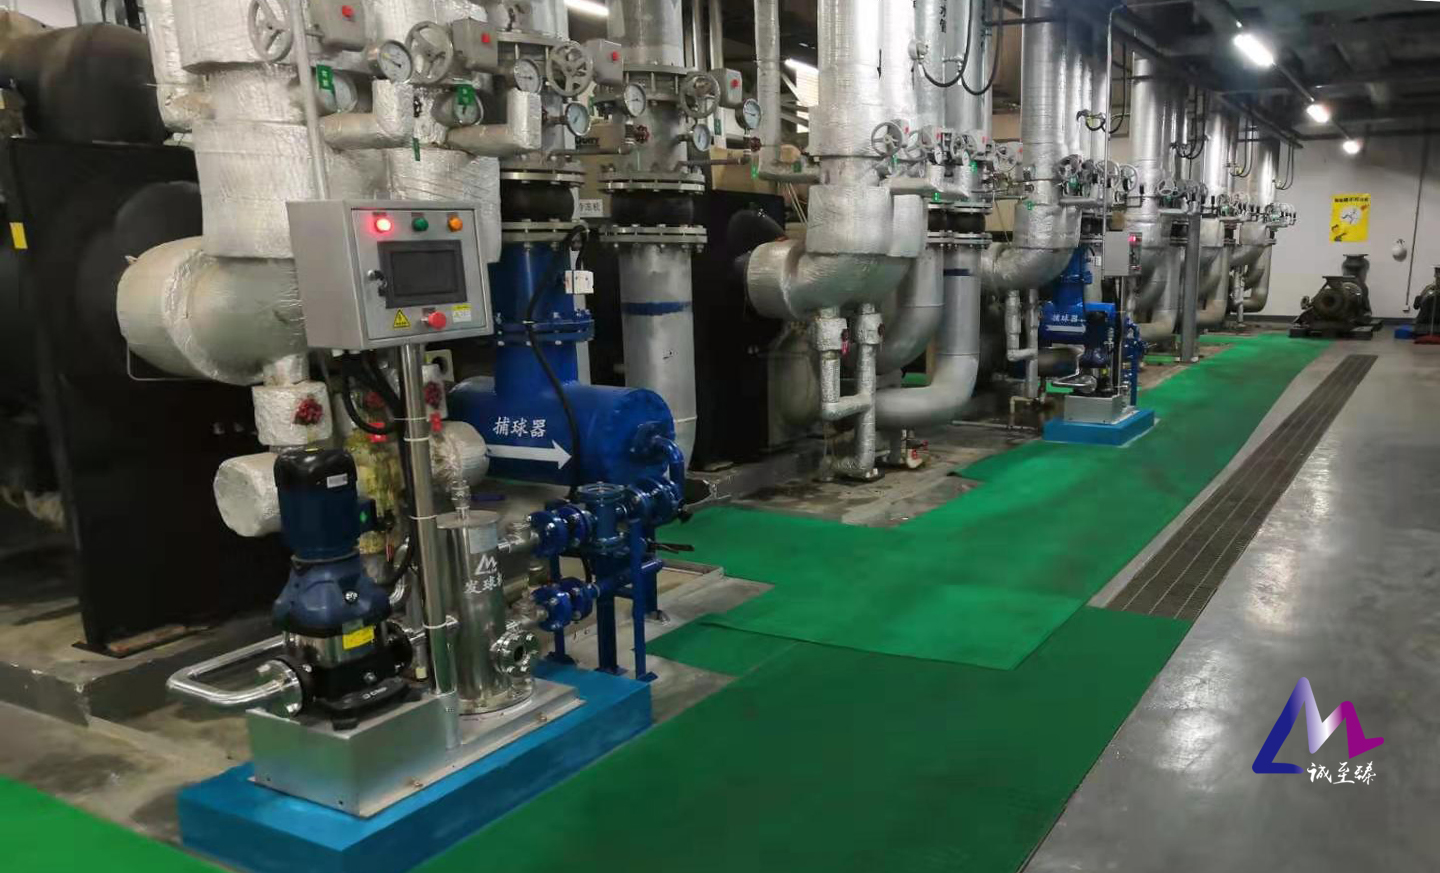 电厂化工厂在线清洗系统五大特色